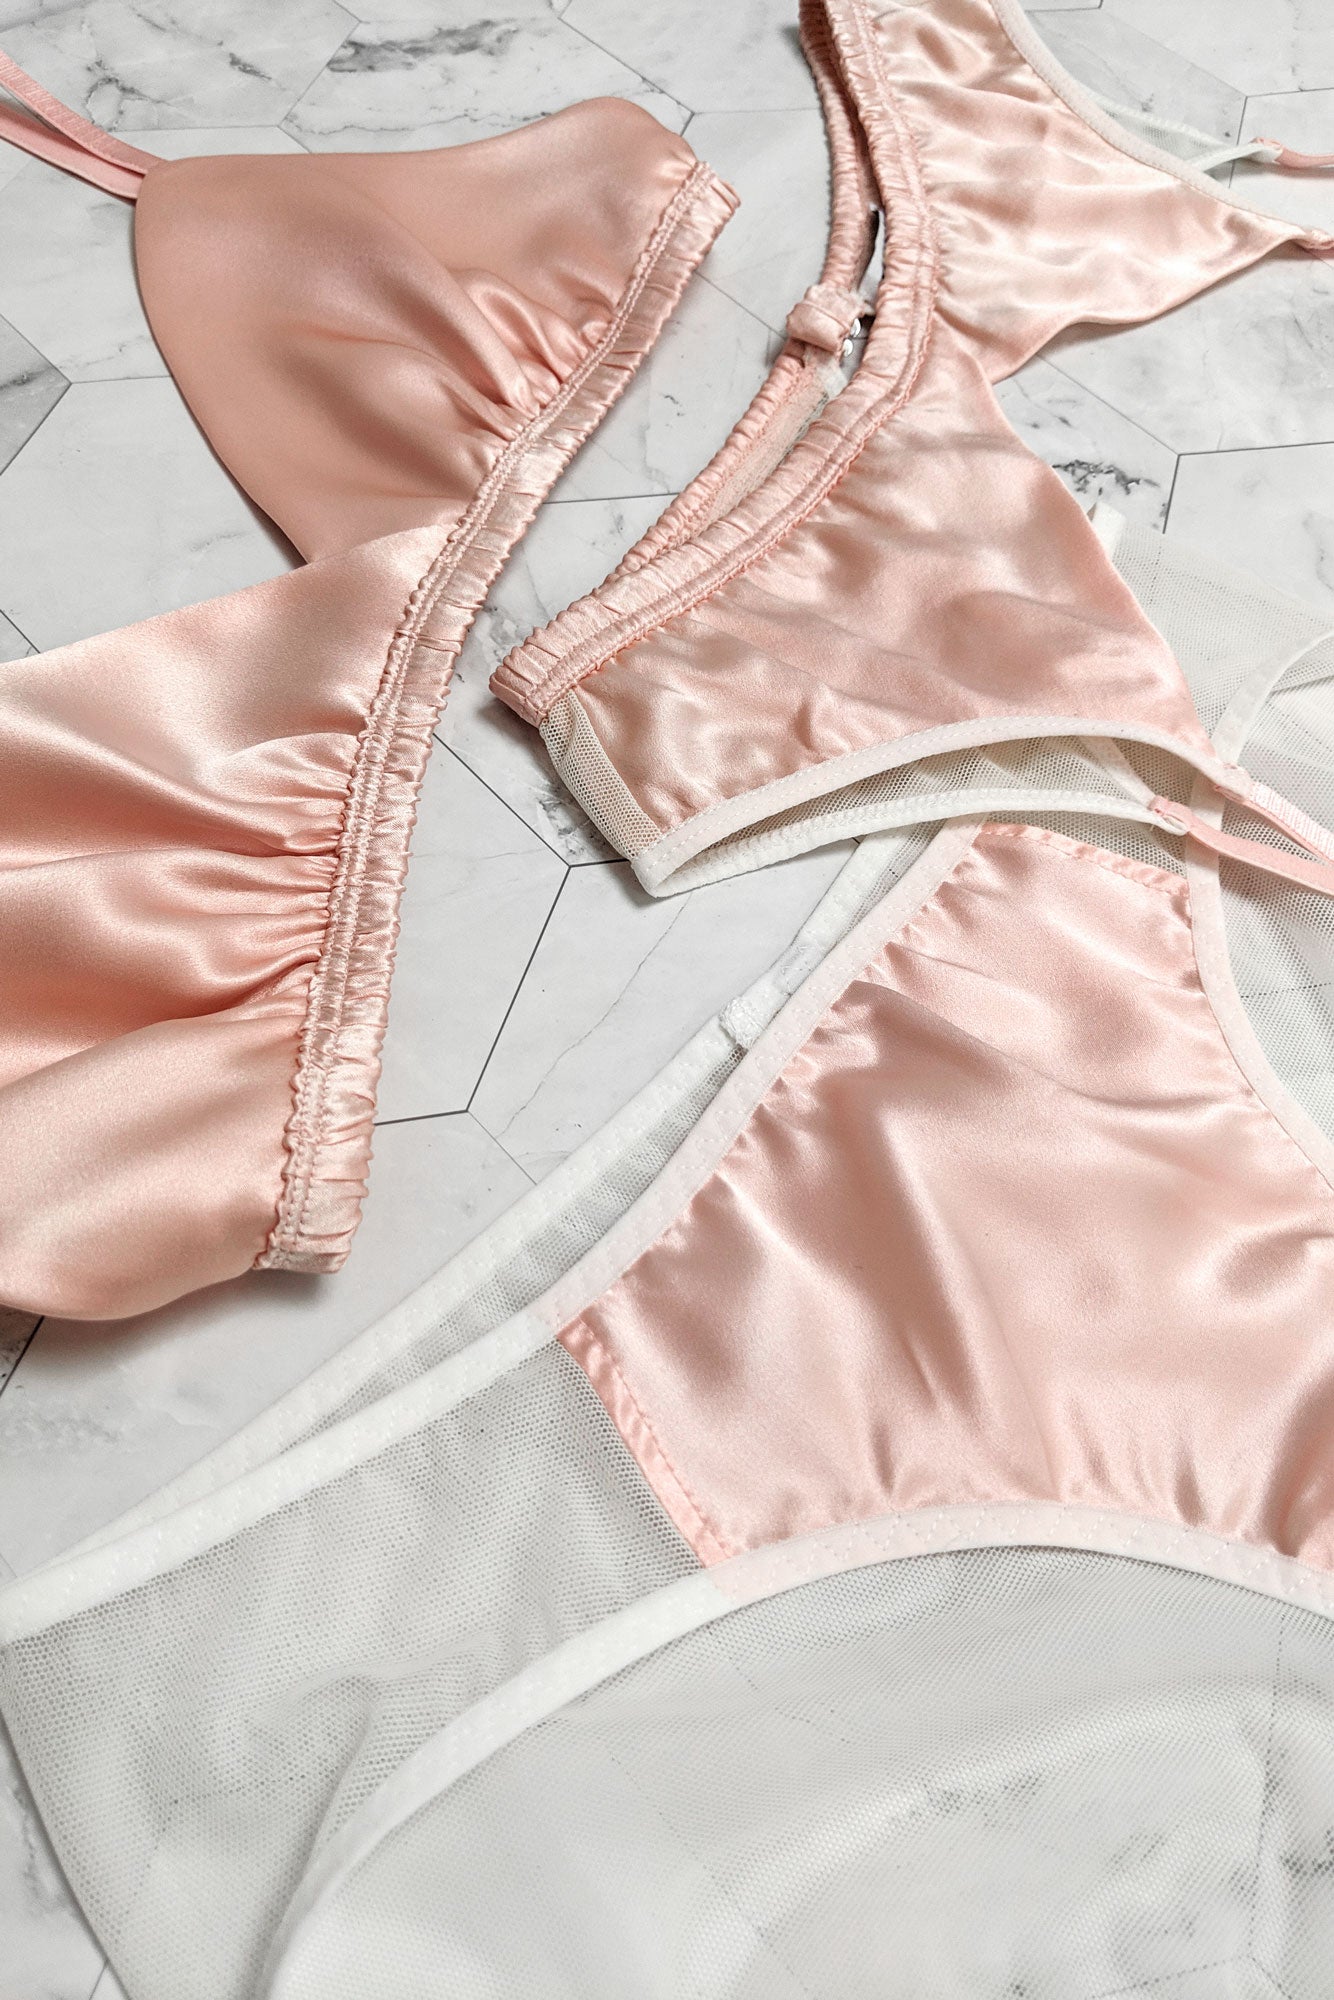 Designer underwear set in pink silk satin and sheer white mesh